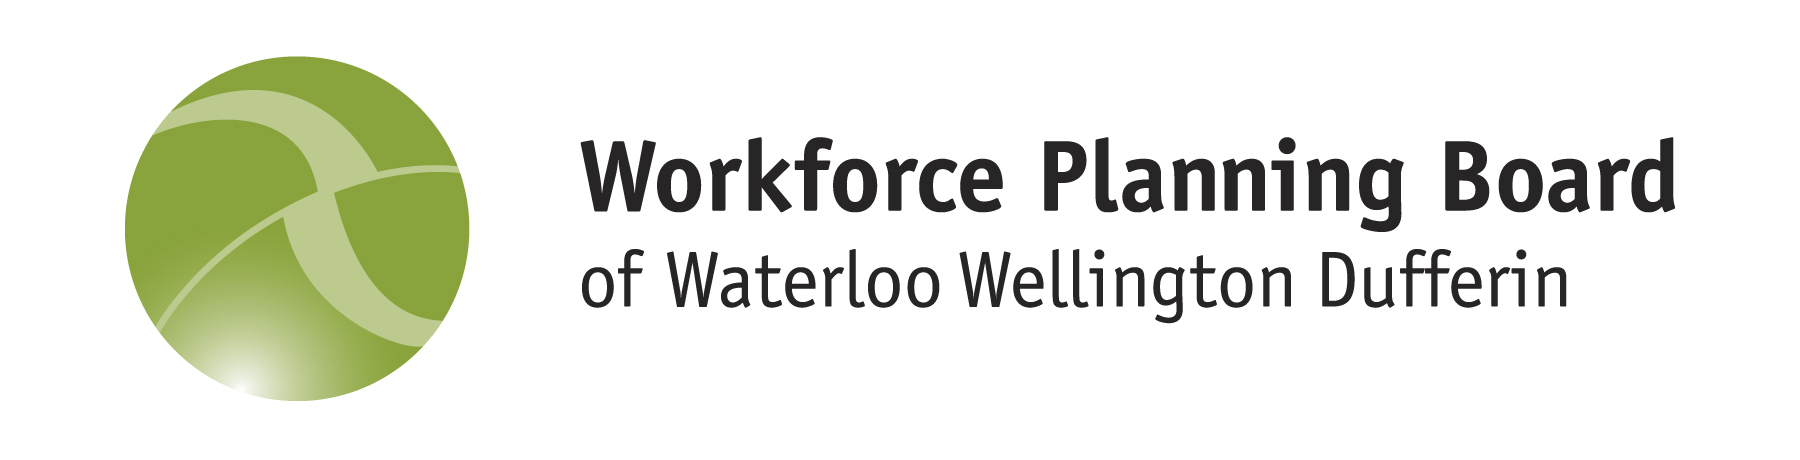 Workforce Planning Board of Waterloo Wellington Dufferin